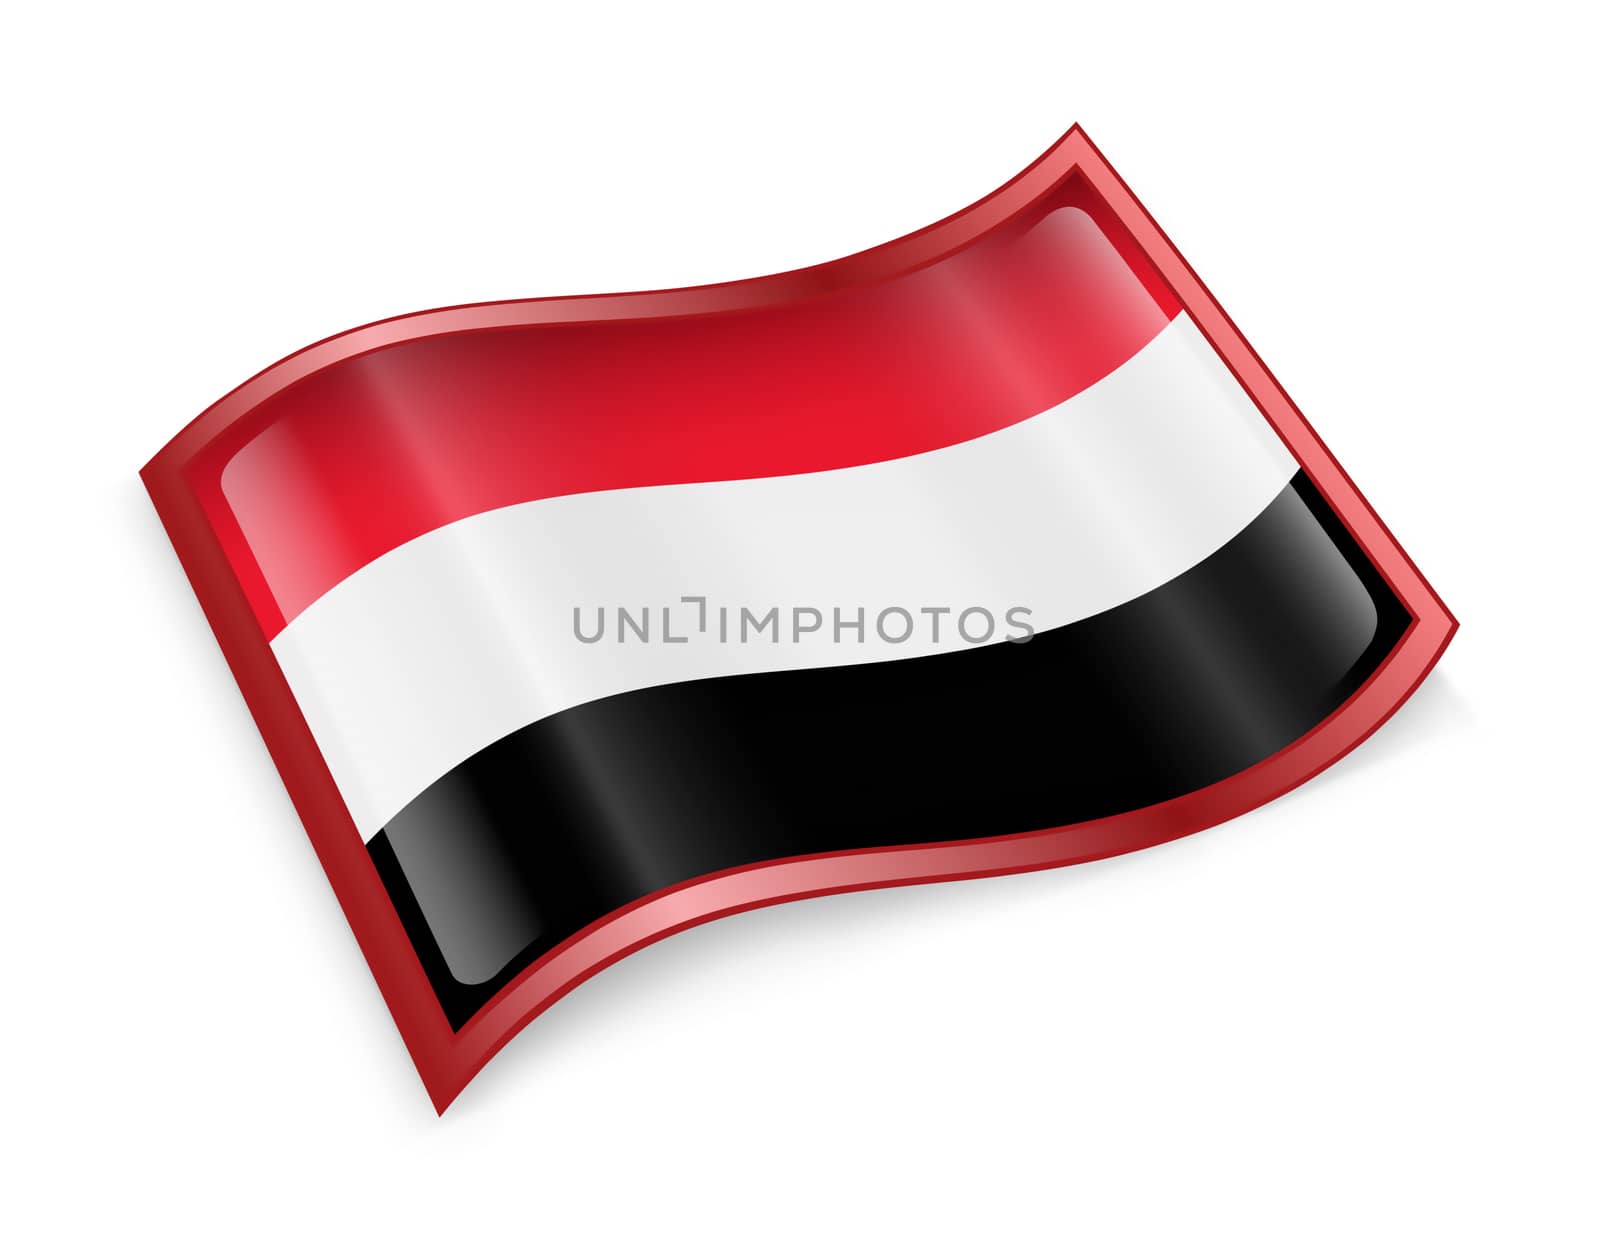 Yemeni flag icon, isolated on white background